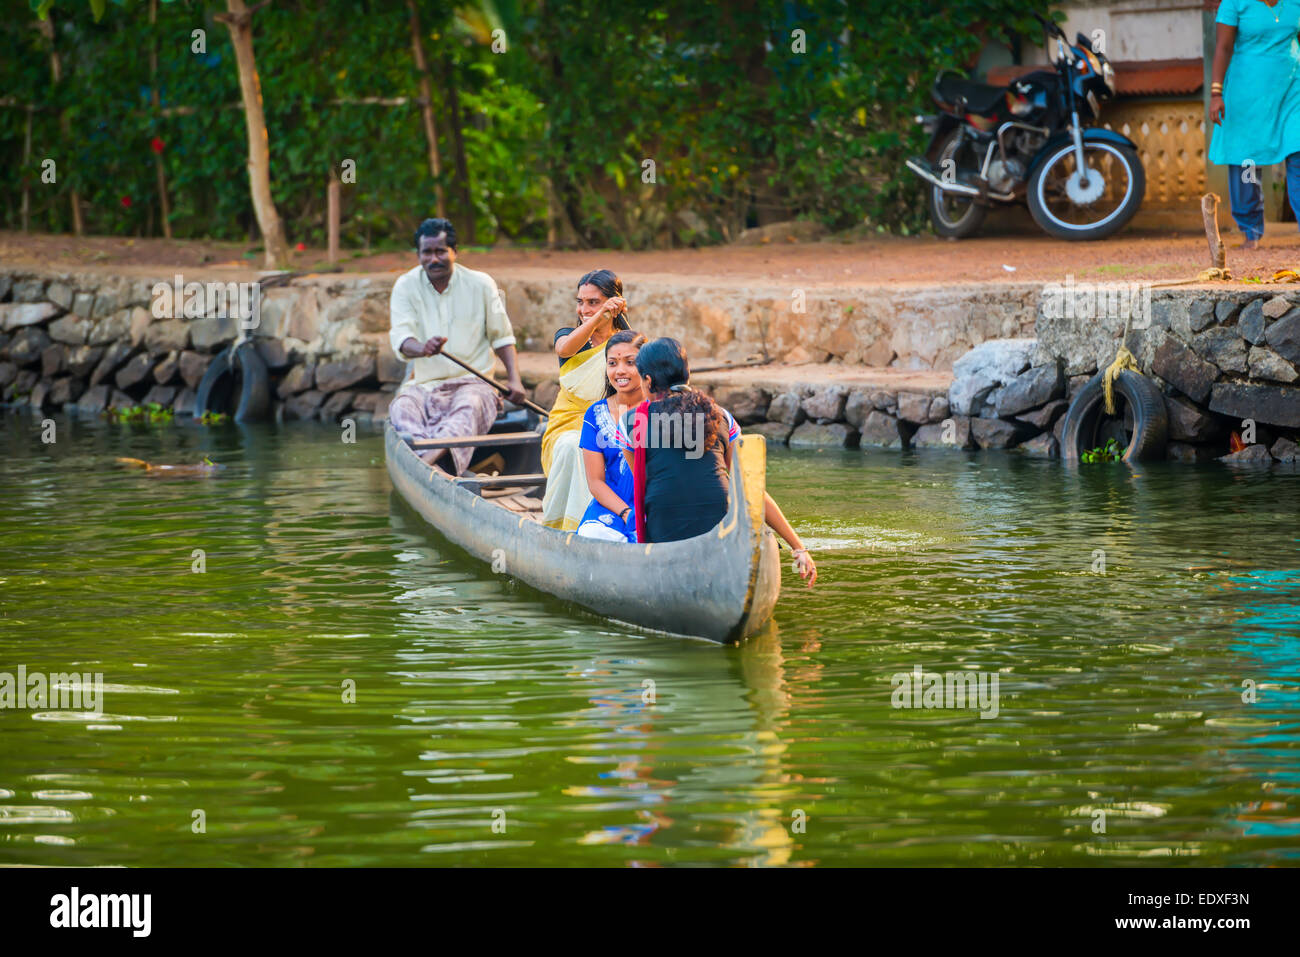 ALLEPPEY, India - 23 febbraio: un uomo non identificato e le donne sono flottanti in una barca tradizionale. India Kerala, Alleppey (Alappu Foto Stock